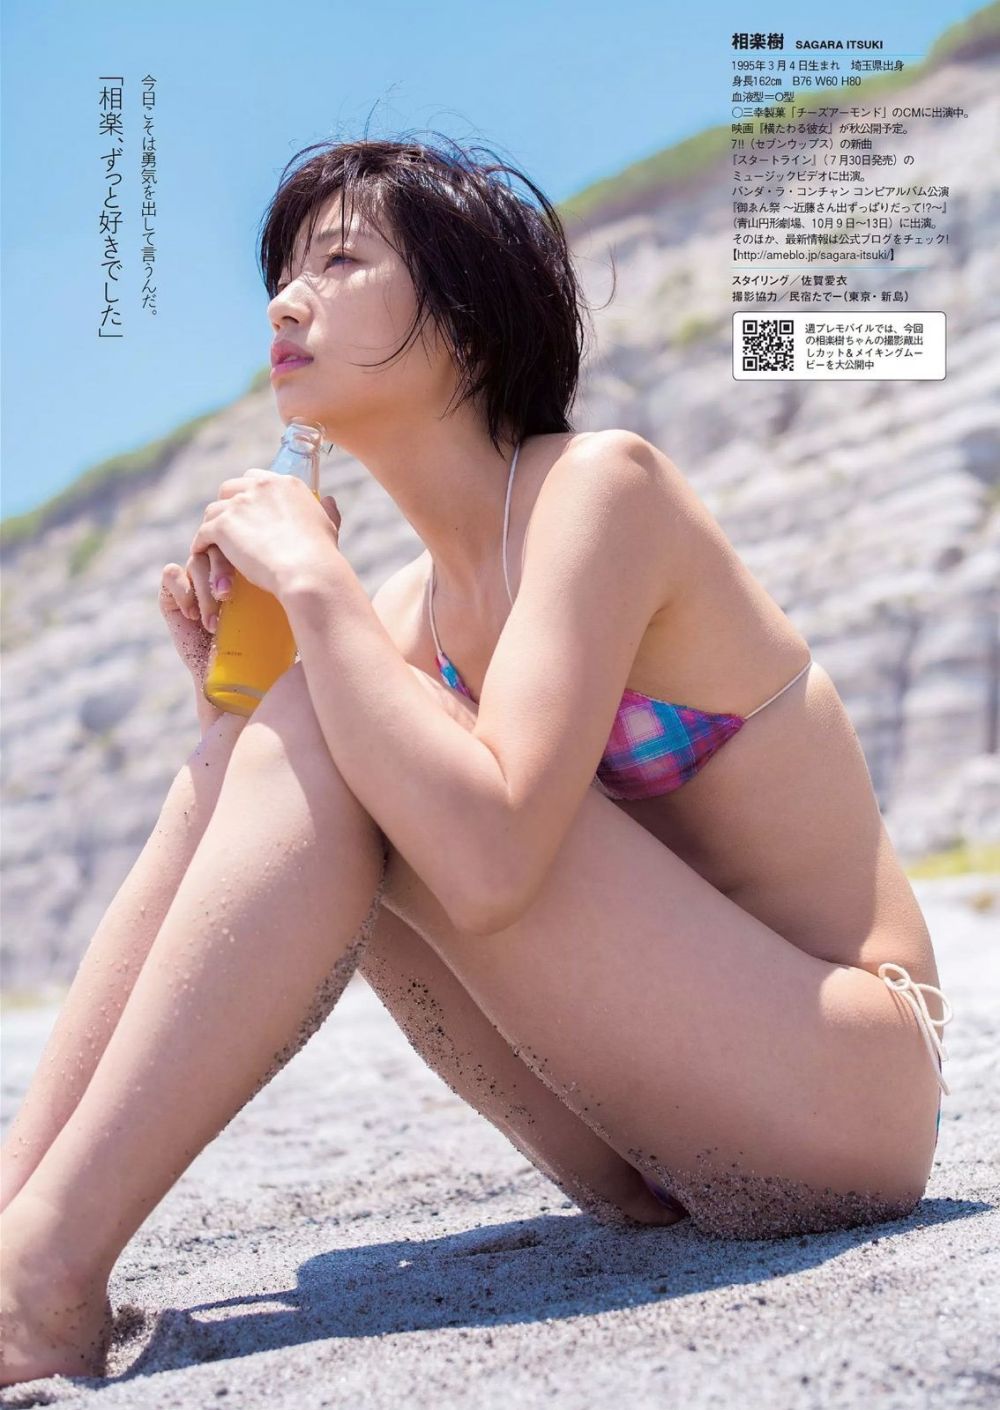 Itsuki Sagara Sexy and Hottest Photos , Latest Pics